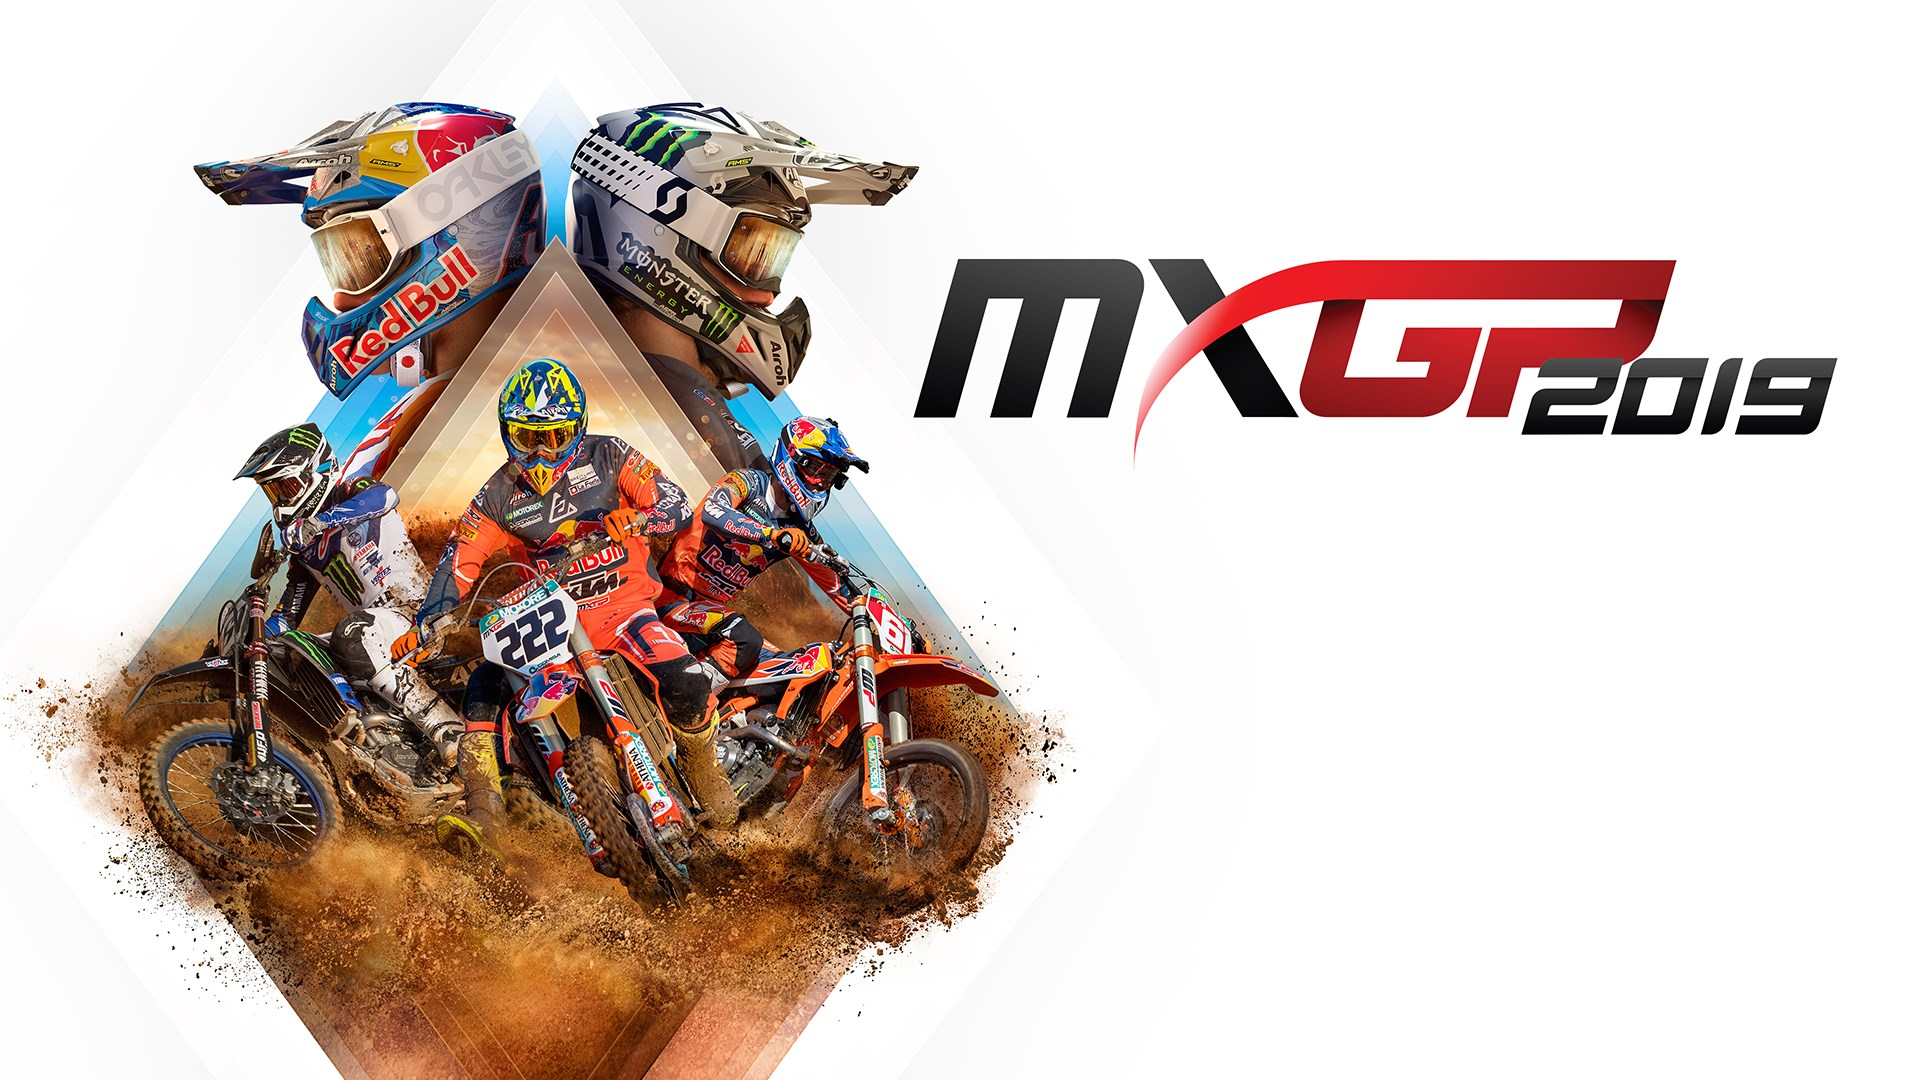 Jogo Mxgp The Oficial Motocross Videogame Para Xbox 360 na